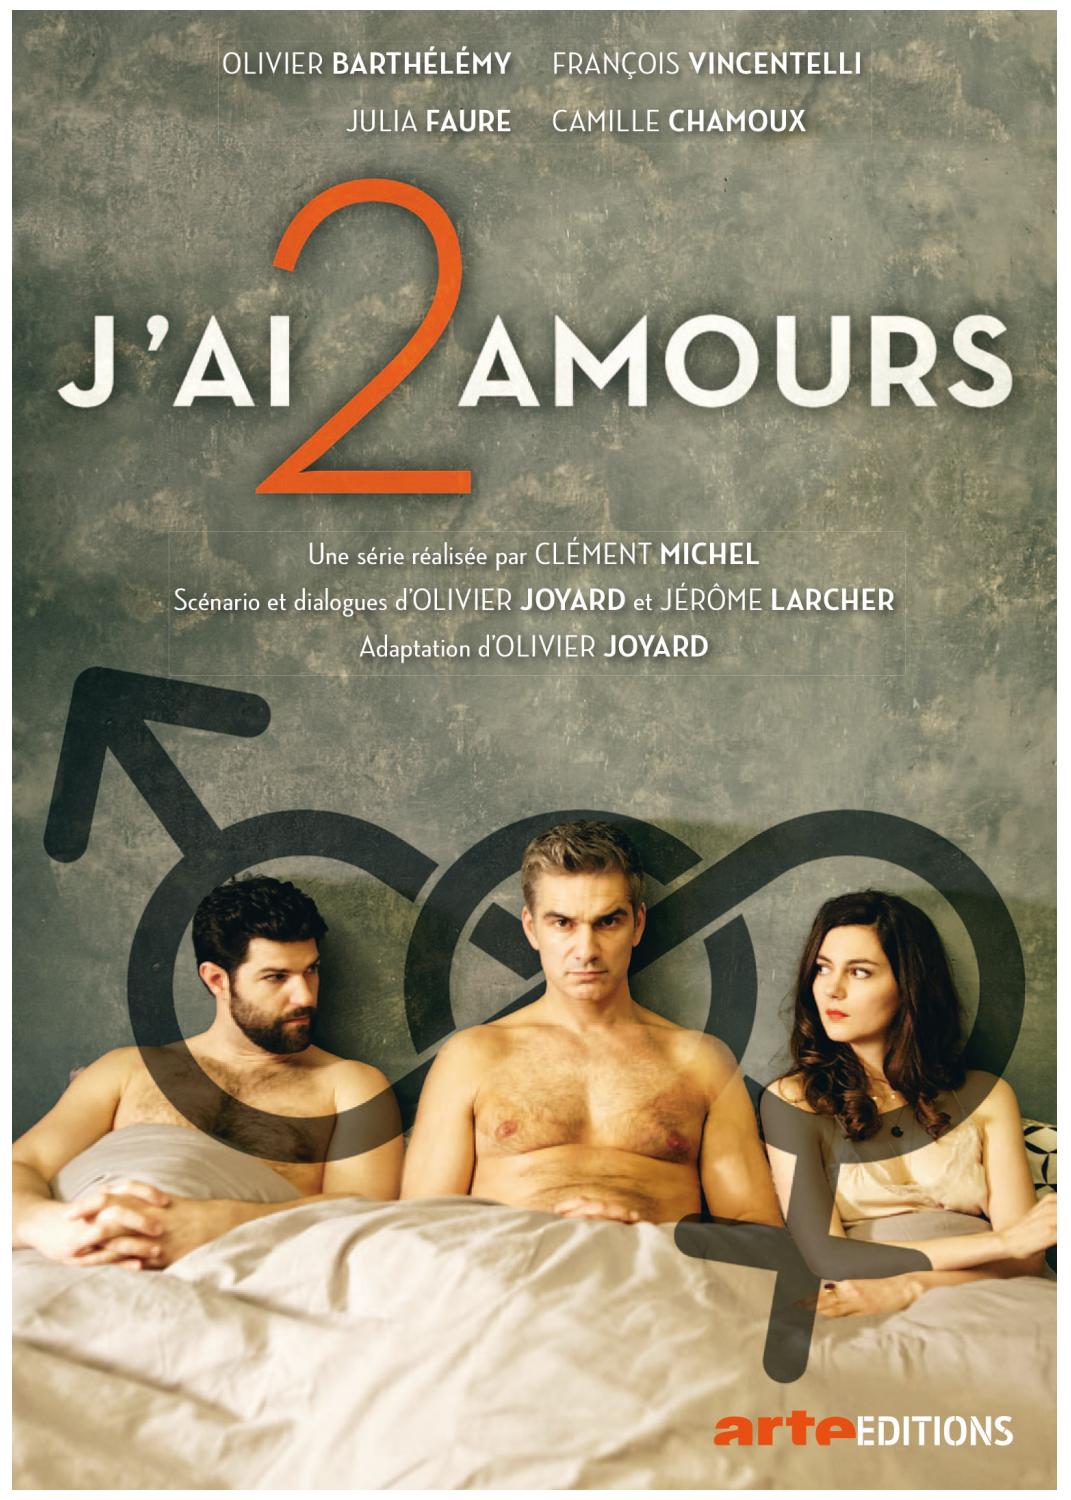 J'ai 2 amours (2017)